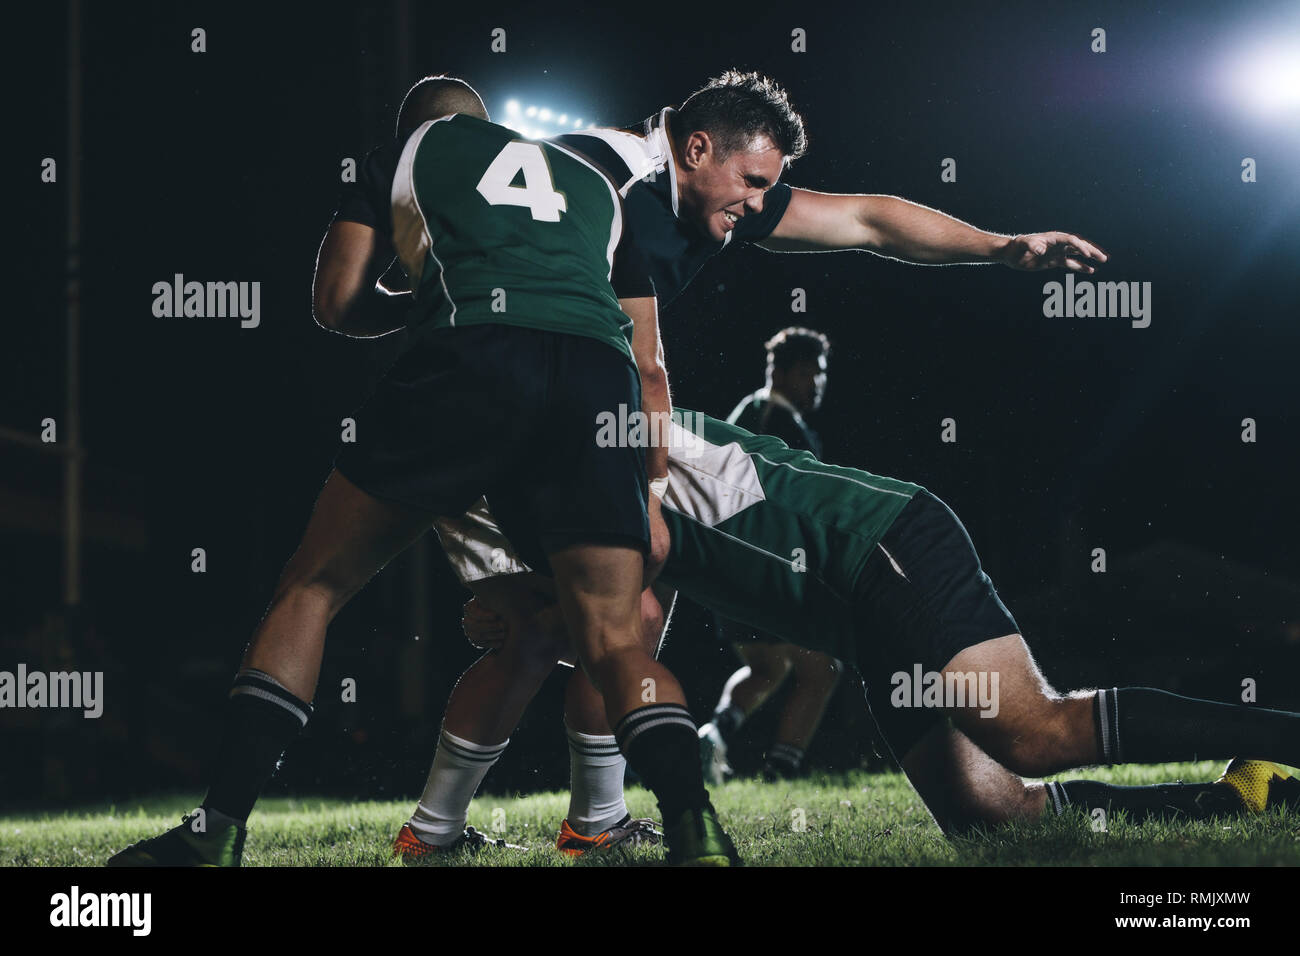 Los jugadores de rugby haciendo un esfuerzo para conseguir la bola del jugador del equipo rival. Los jugadores de rugby que compiten en match bajo luces. Foto de stock